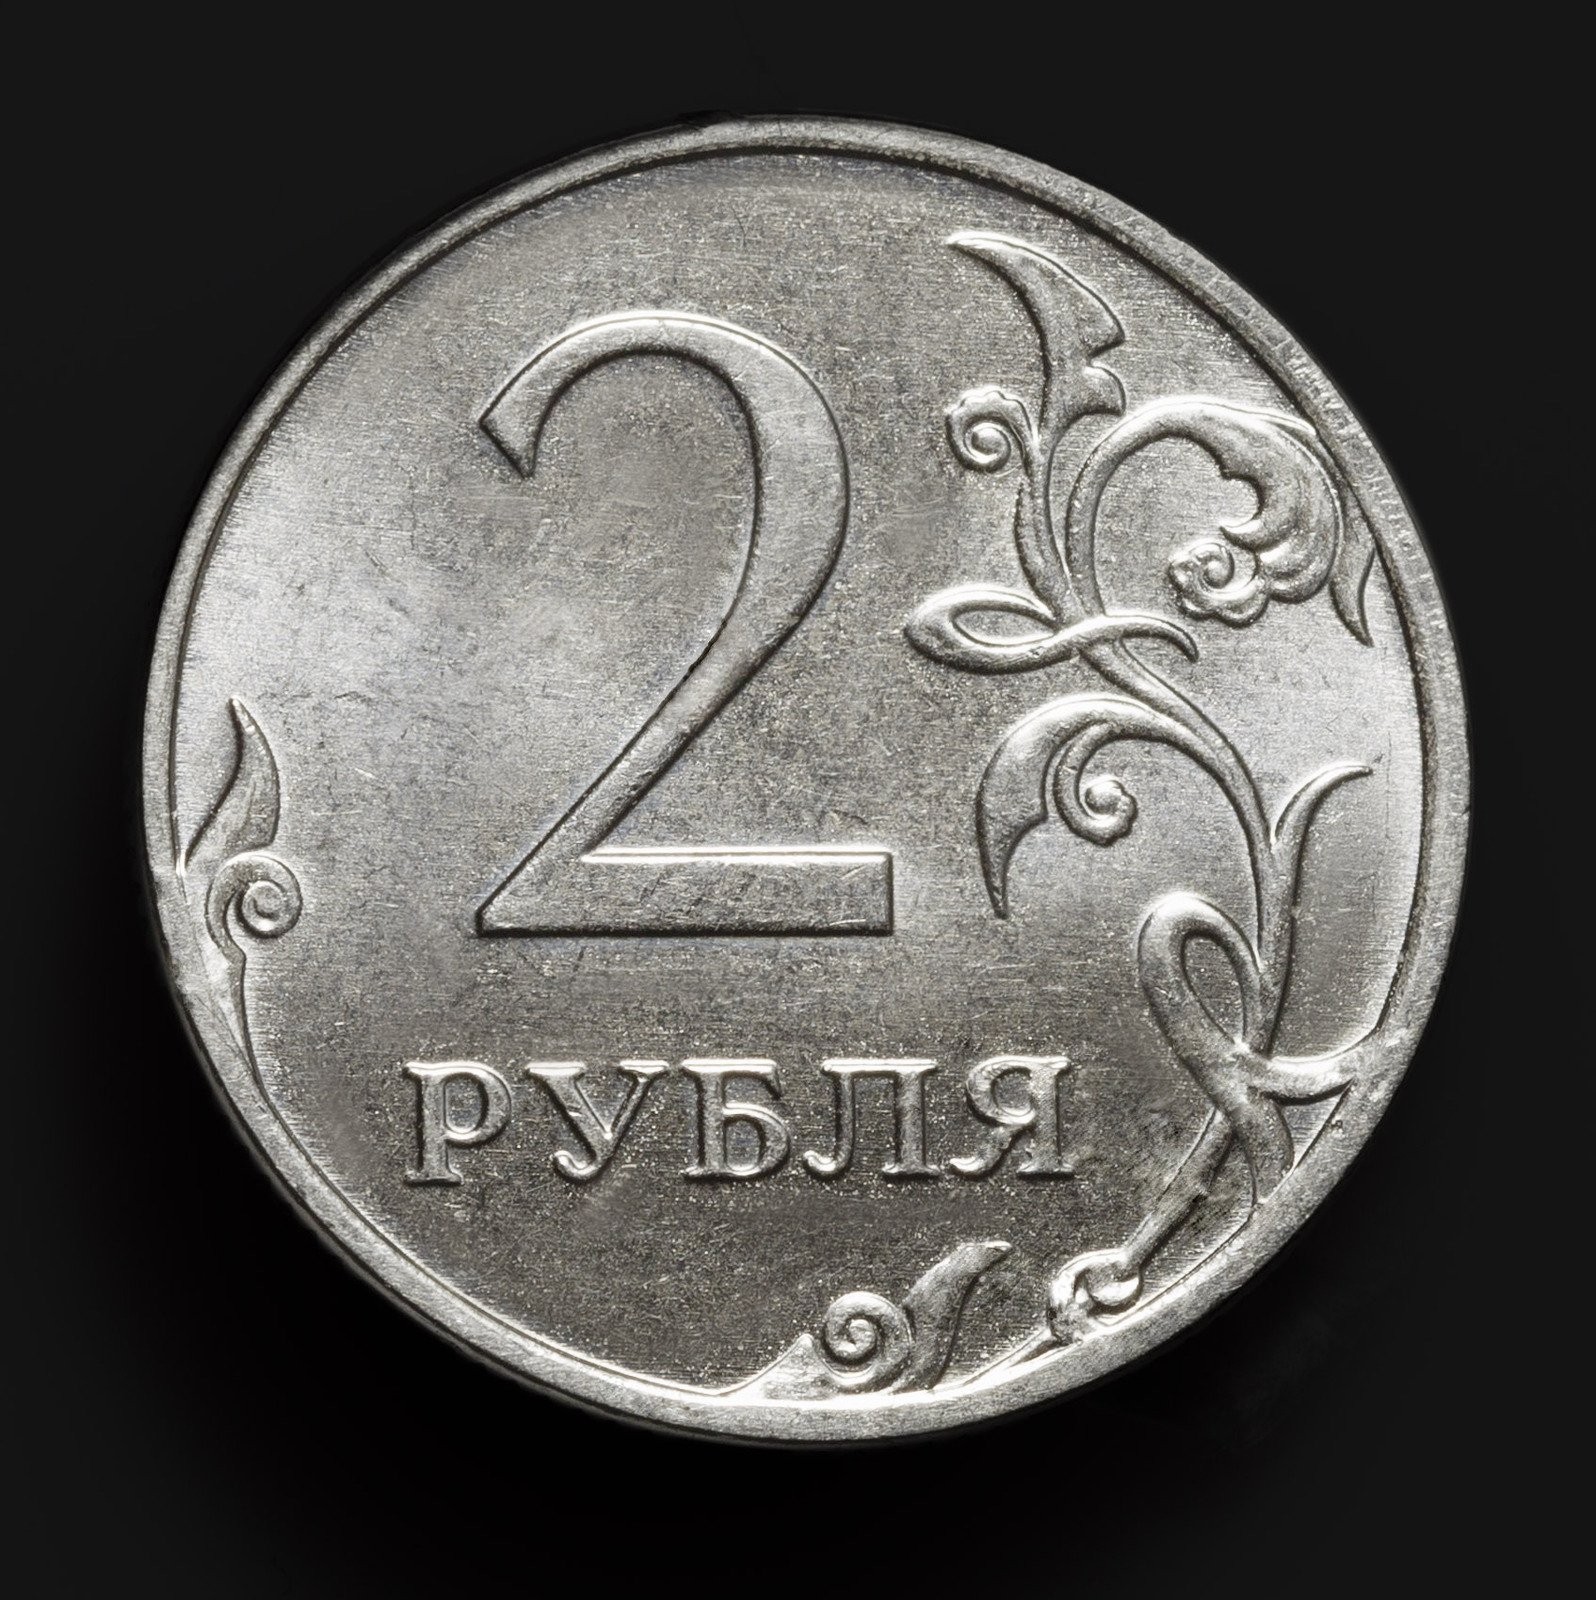 Ба рубль. 2 Рубля. Монета 2 руб. Монета 2 рубля на прозрачном фоне. Монета 5 рублей.